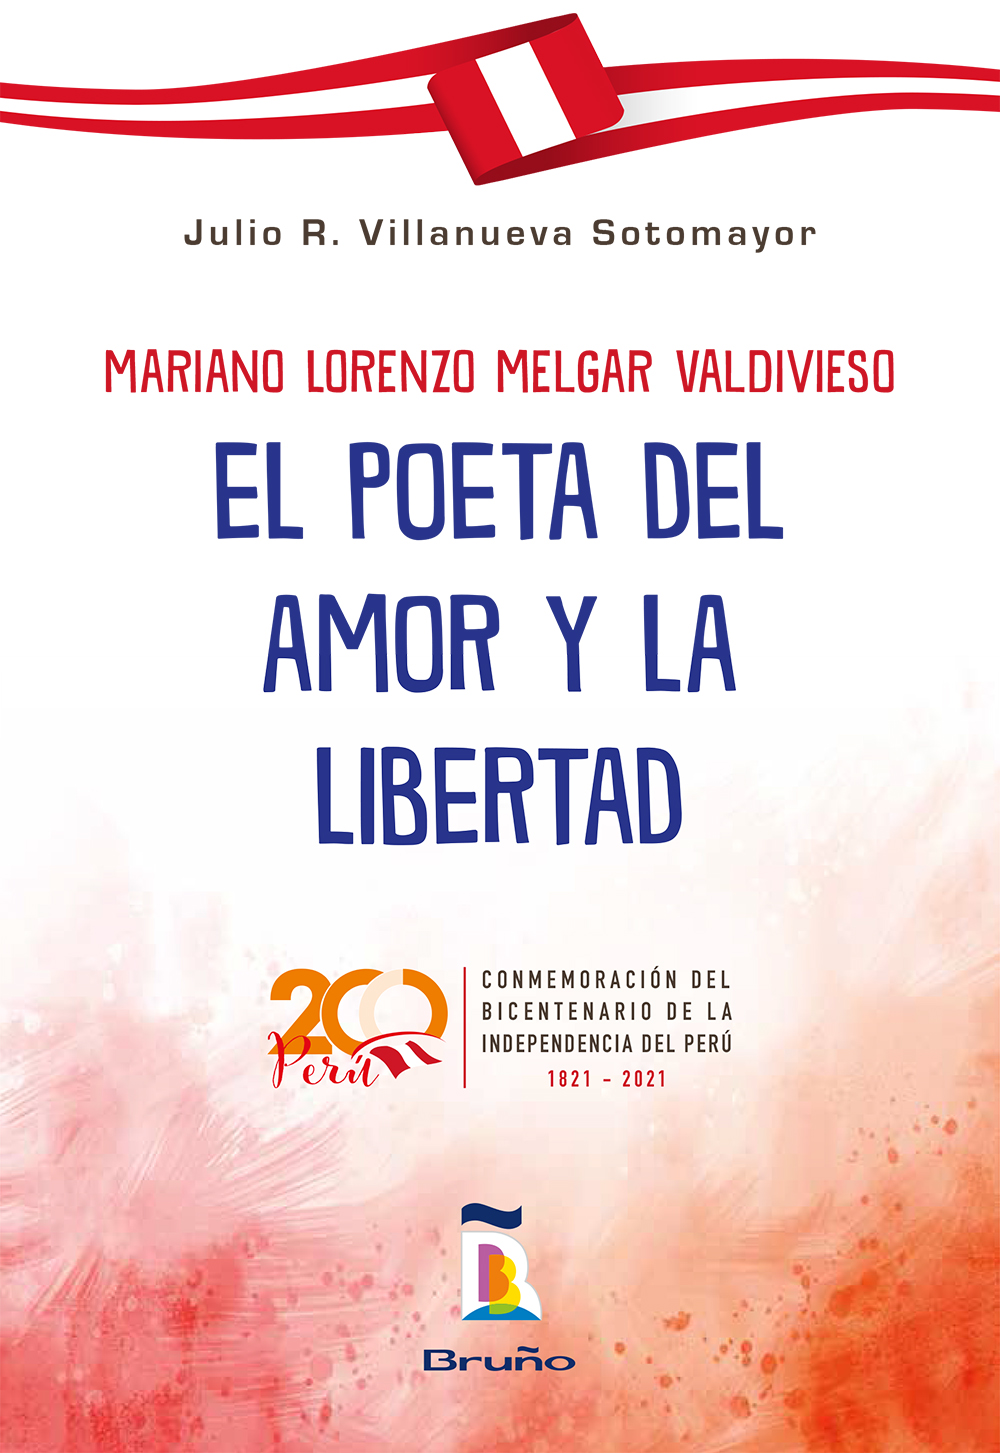 Mariano Lorenzo Melgar Valdivieso - El poeta del amor y la libertad